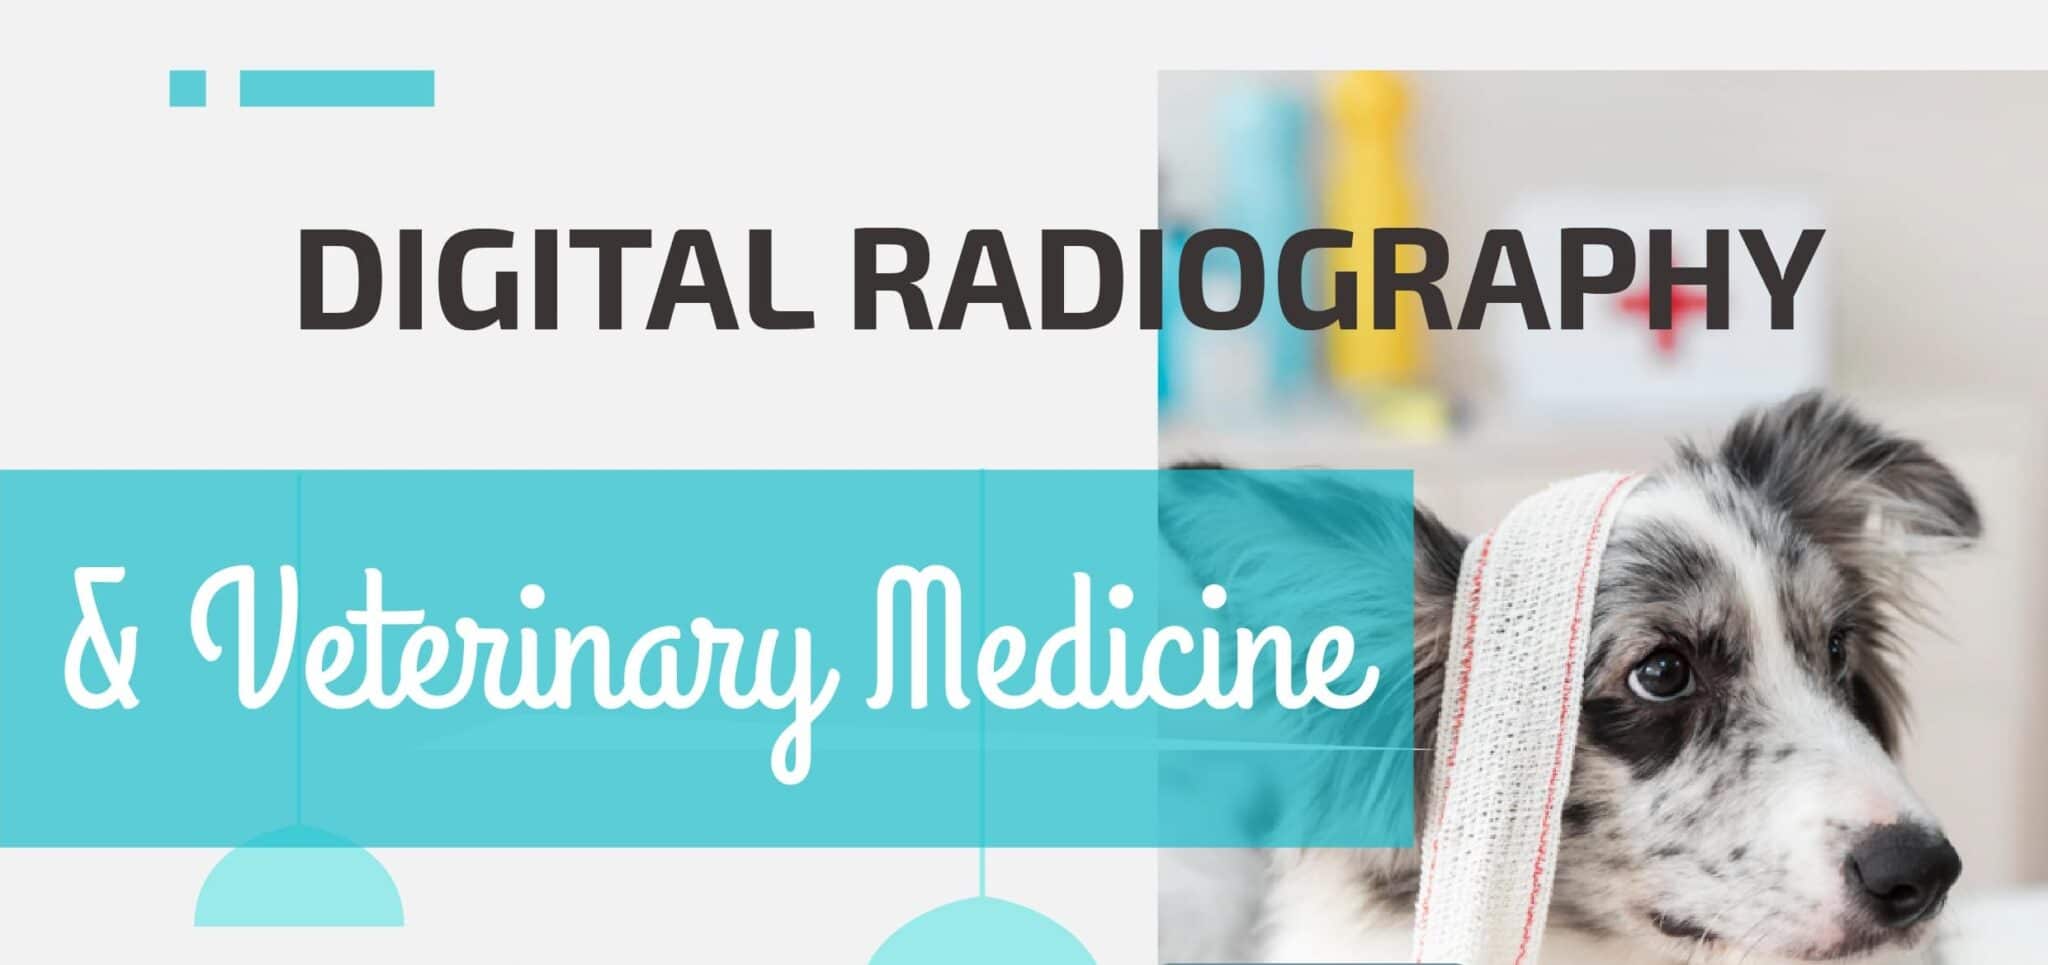 Digital Radiography & Veterinary Medicine - Copy